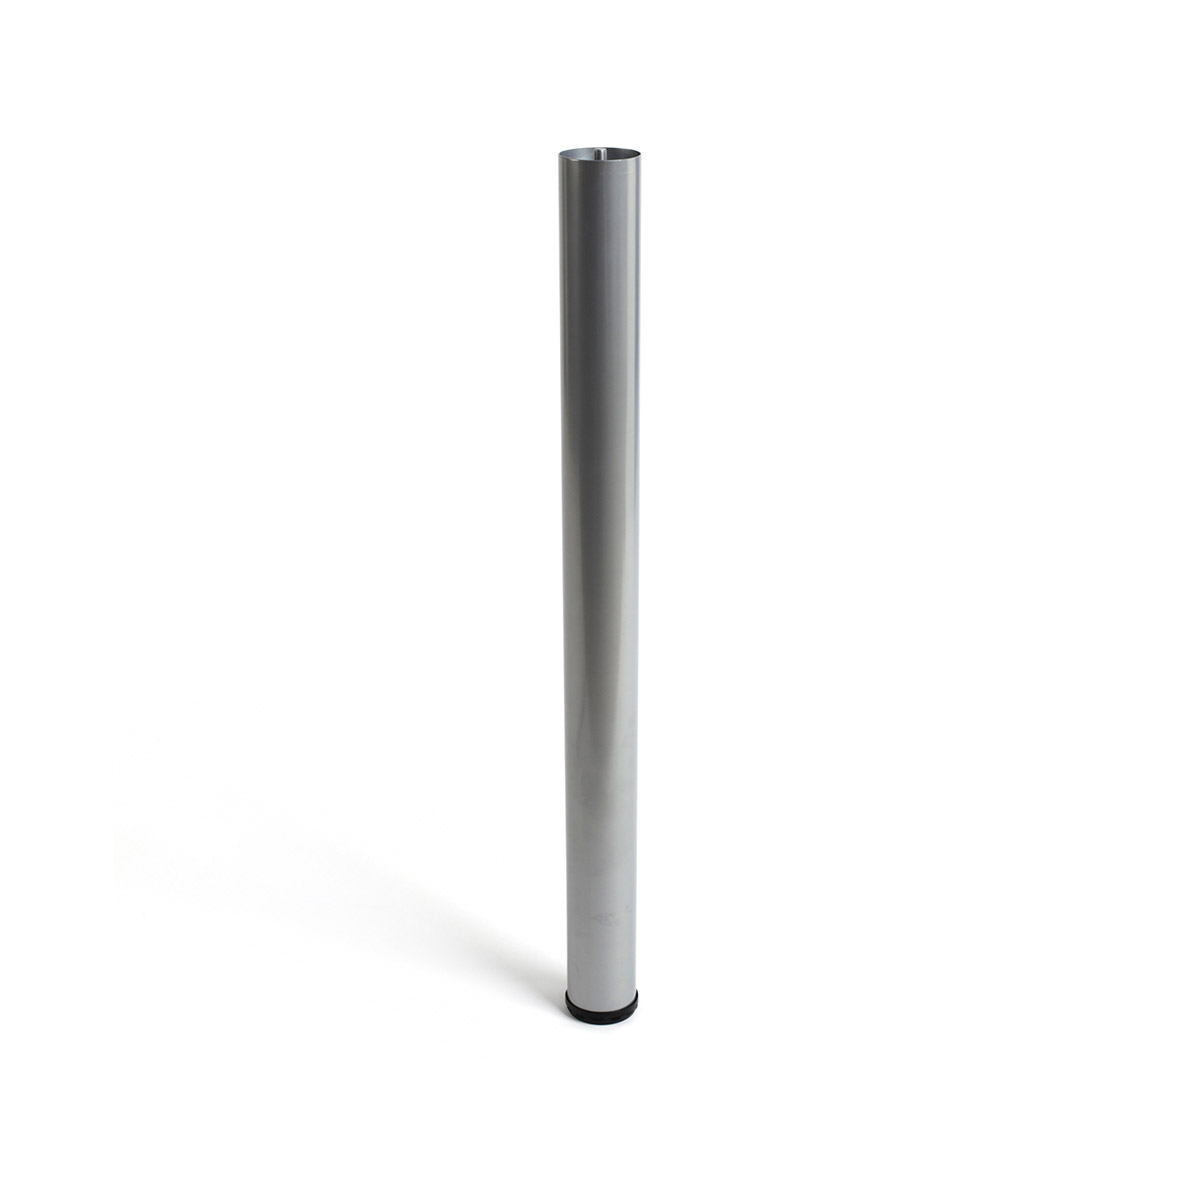 Pied cylindrique en acier d'une hauteur de 710 mm et finition aluminium. Dimensions: 60x60x710 mm